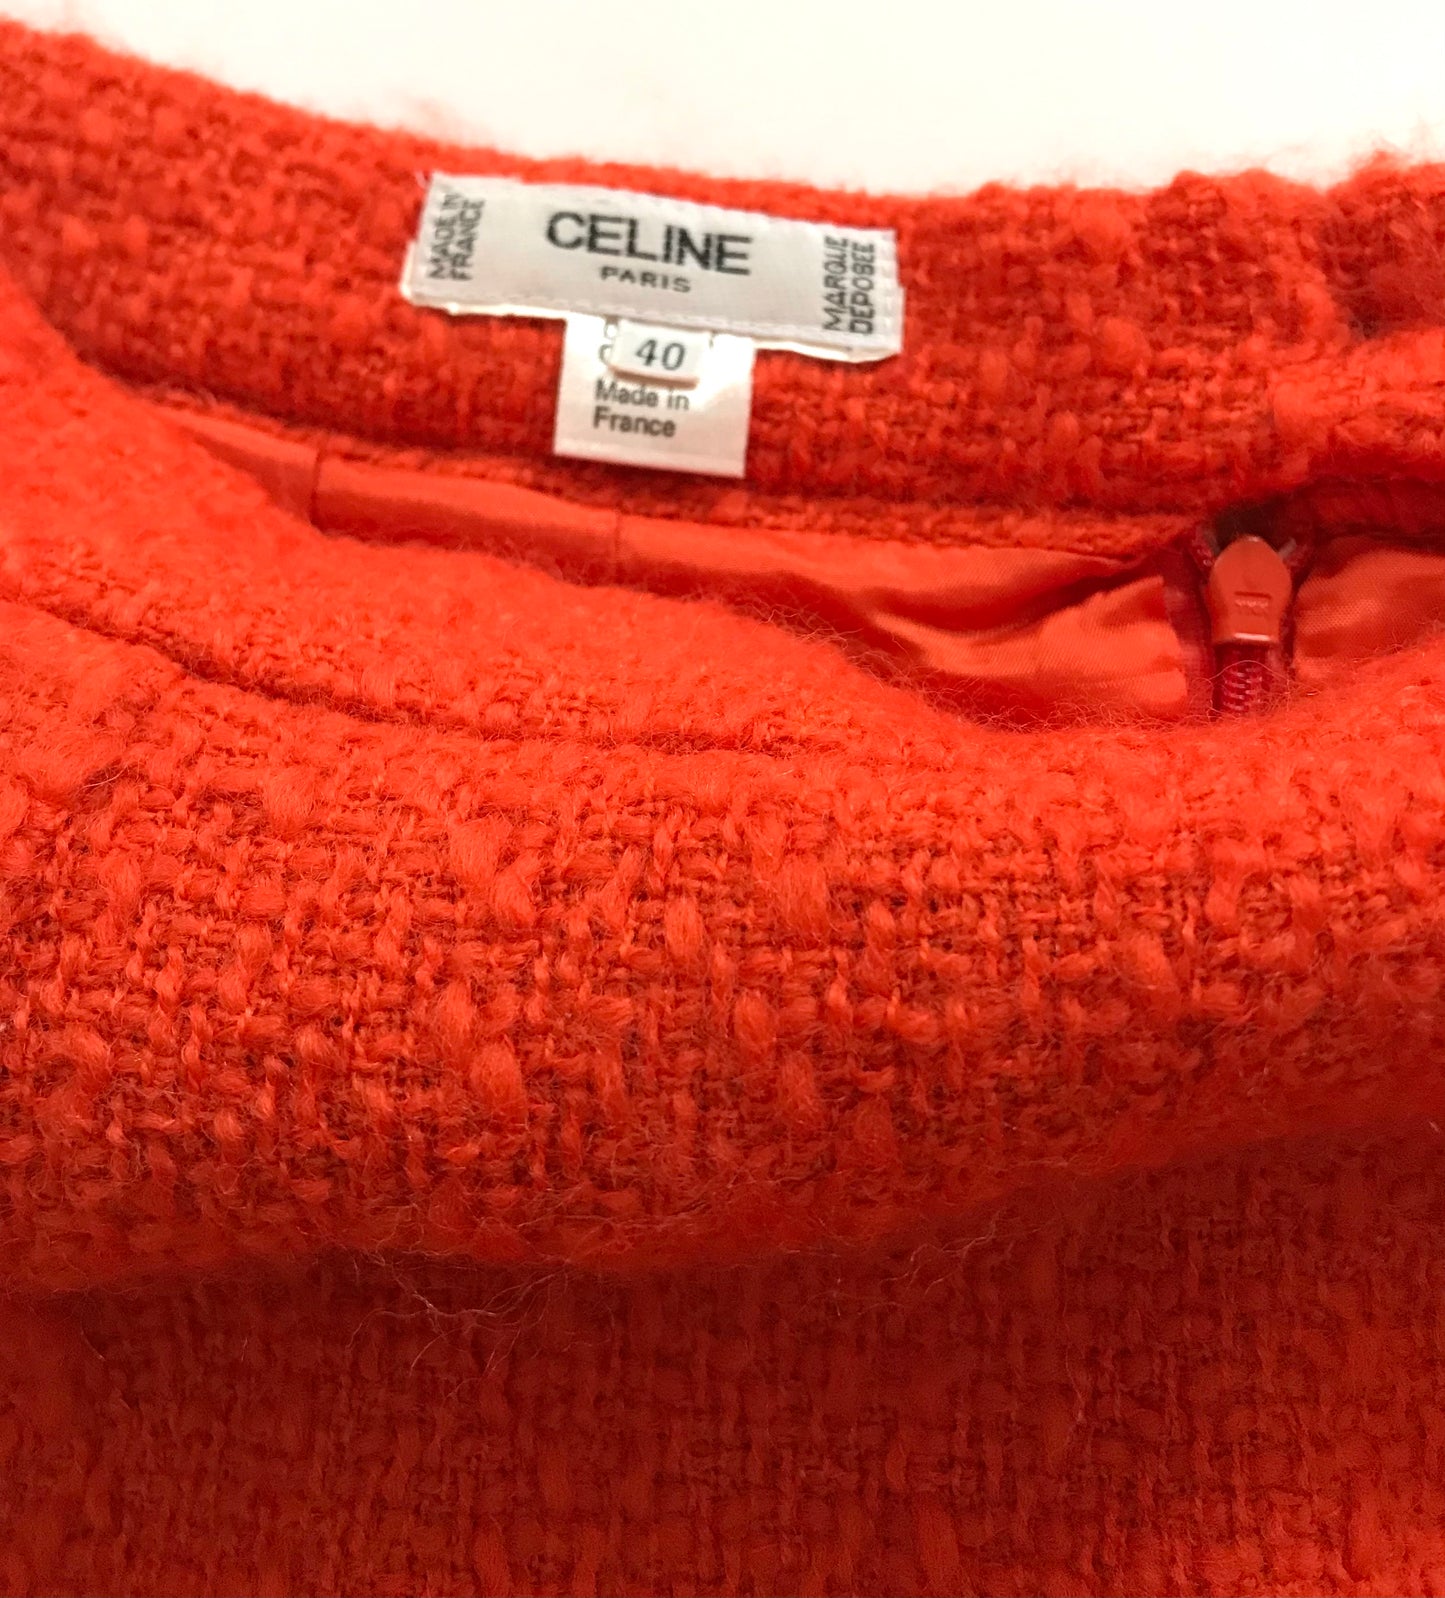 Céline pencil skirt in orange tweed